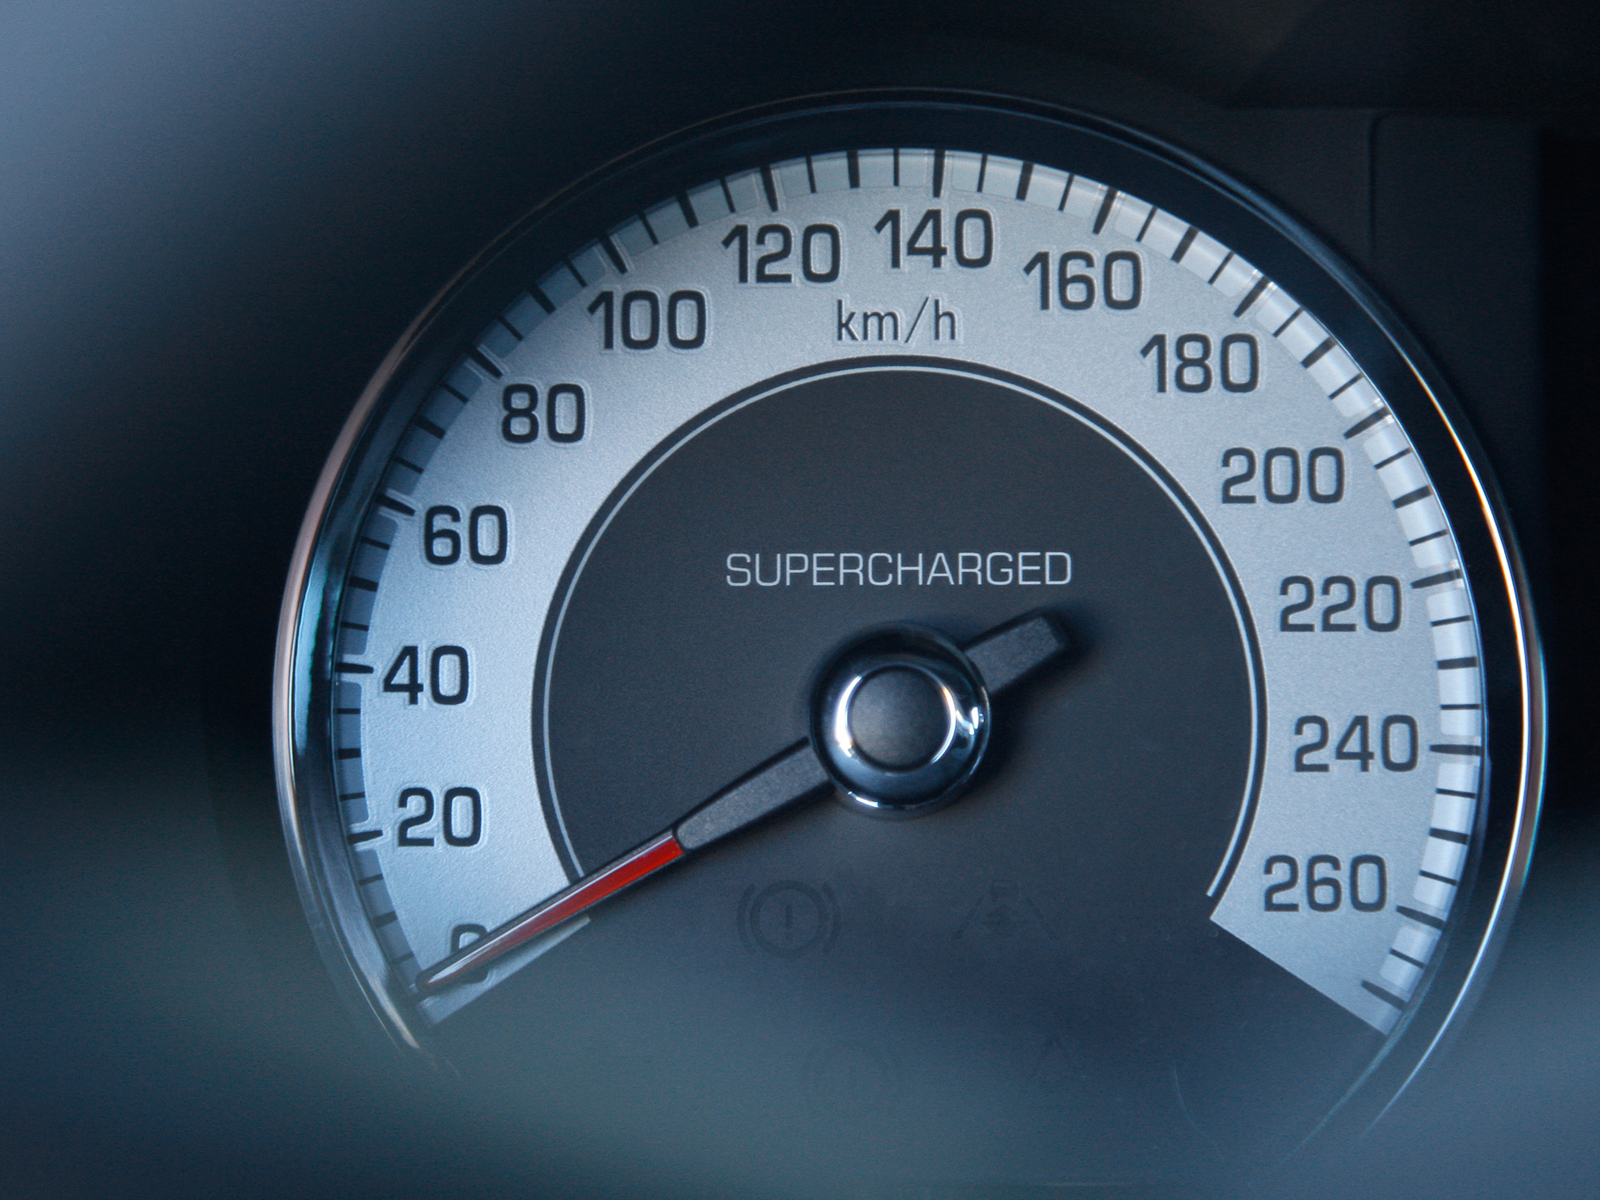 Car Speedometer Images  Free Download on Freepik